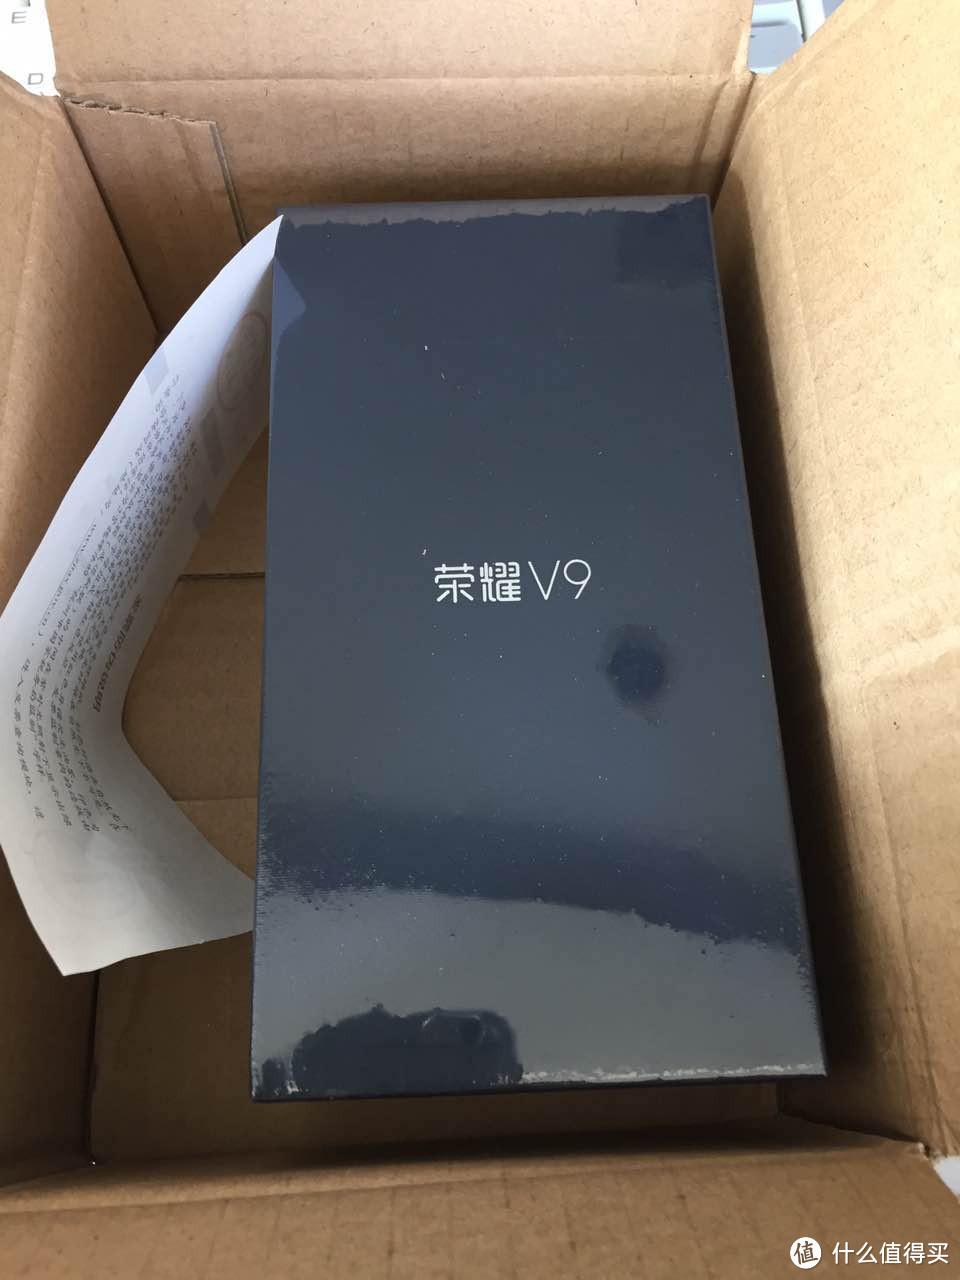 HUAWEI 华为 荣耀V9 全网通手机 蓝色64G 开箱体验